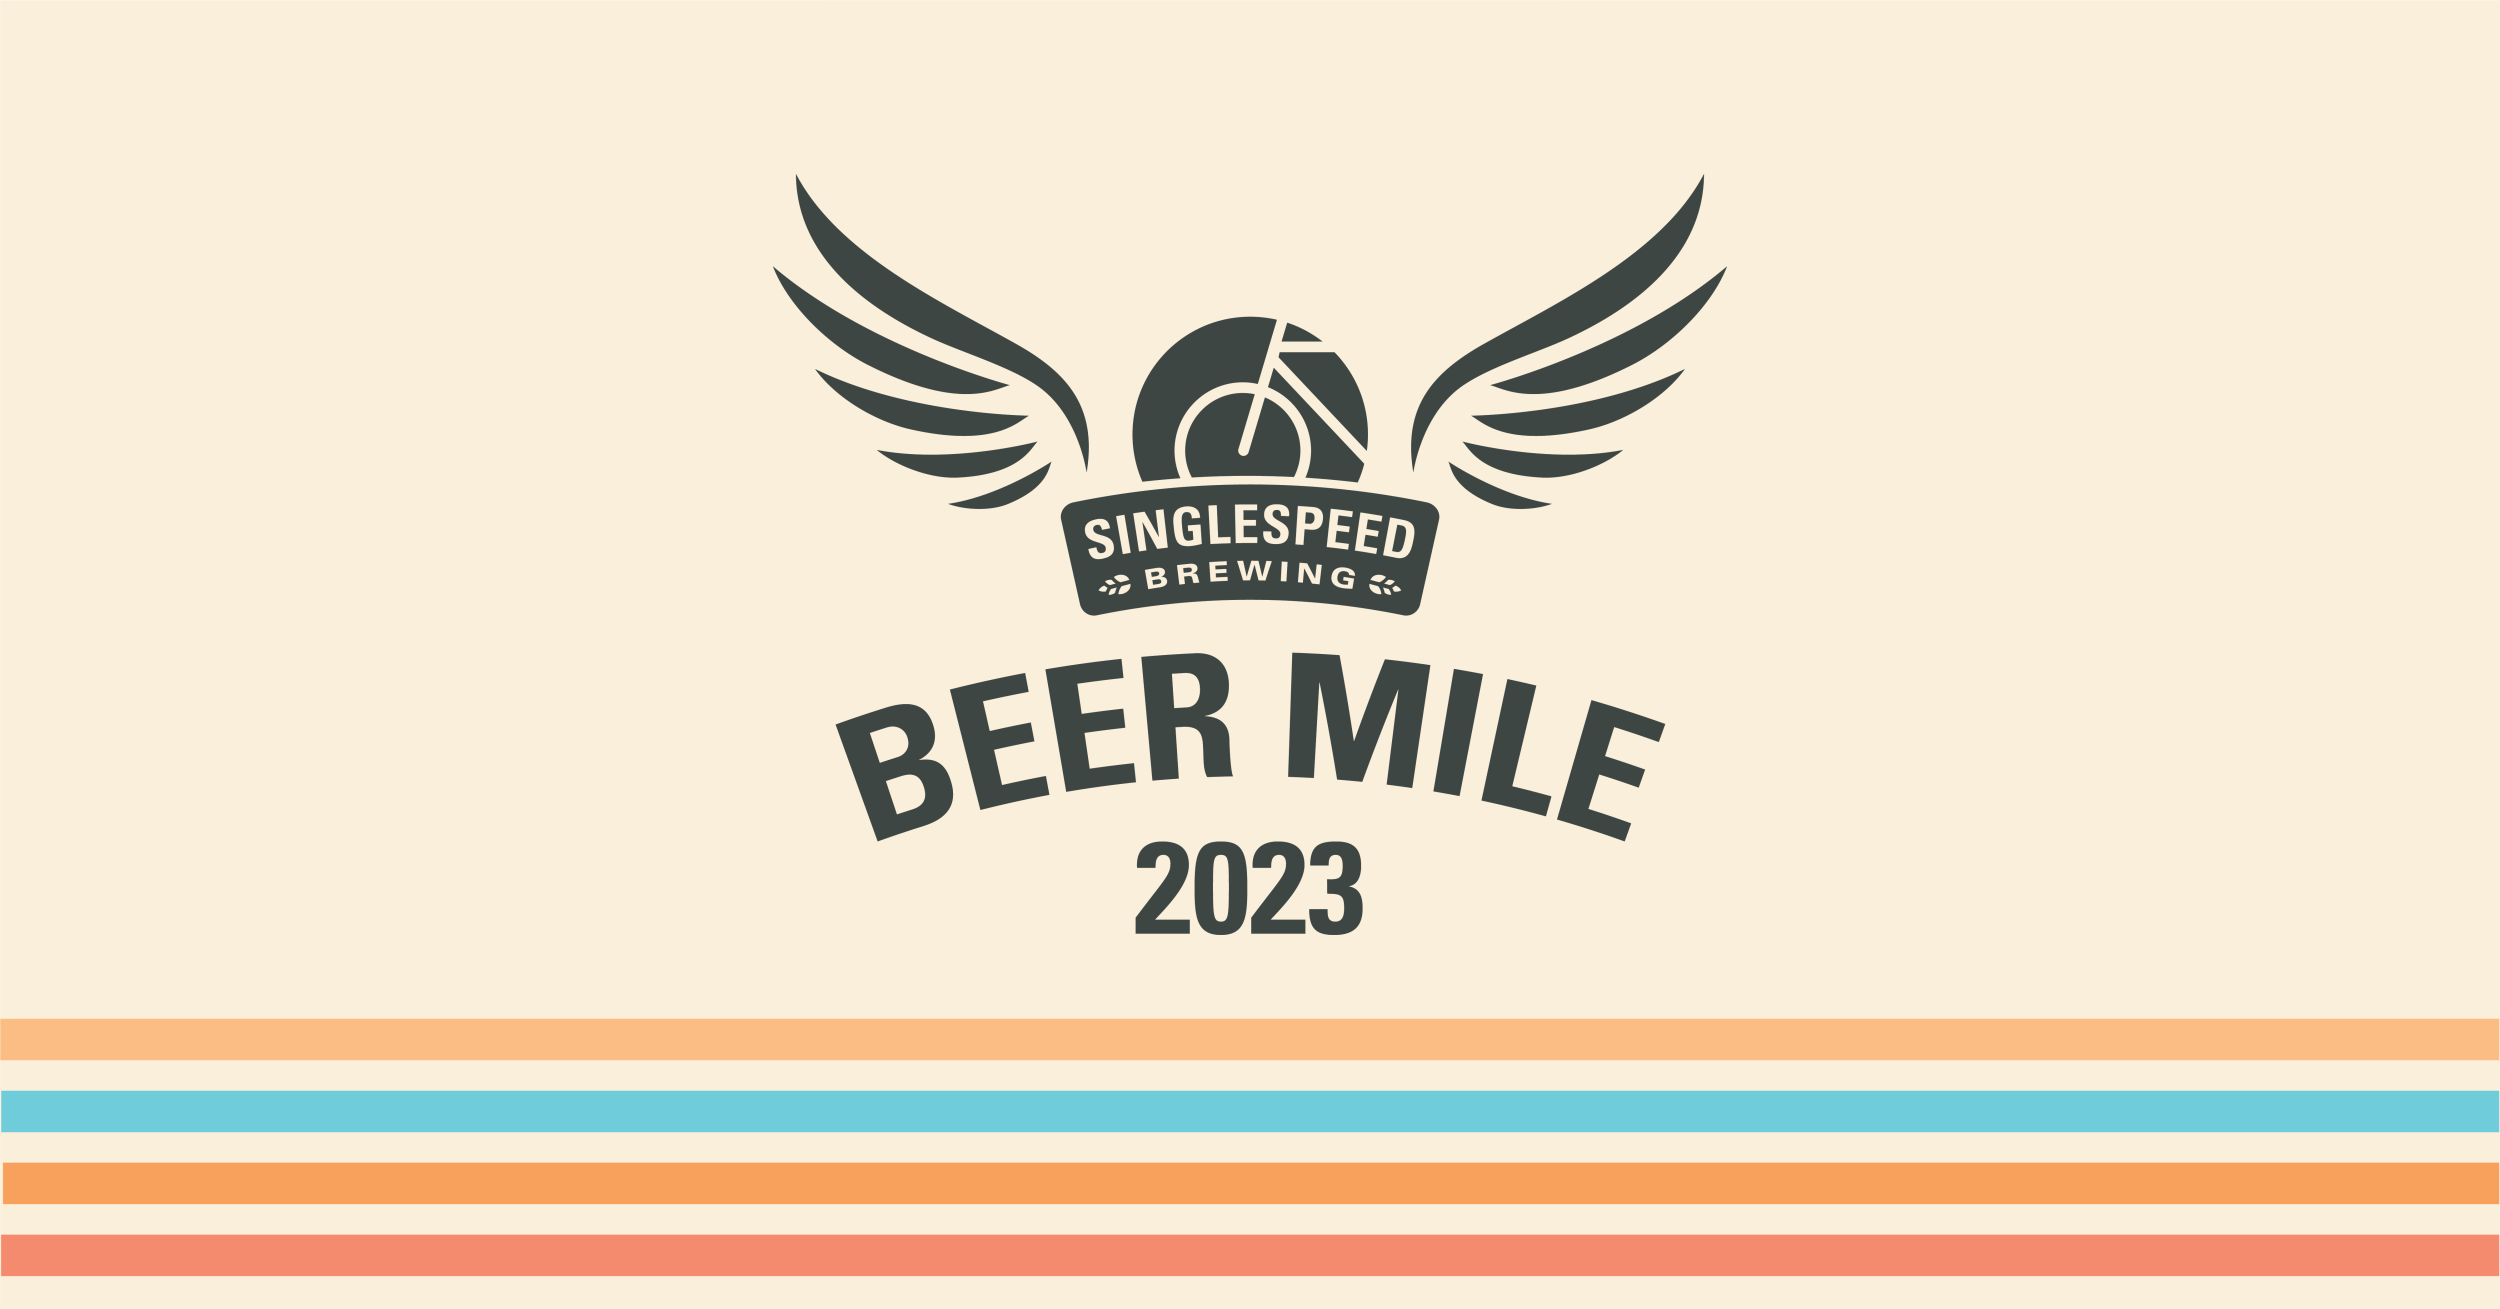 Beer Mile 2023 